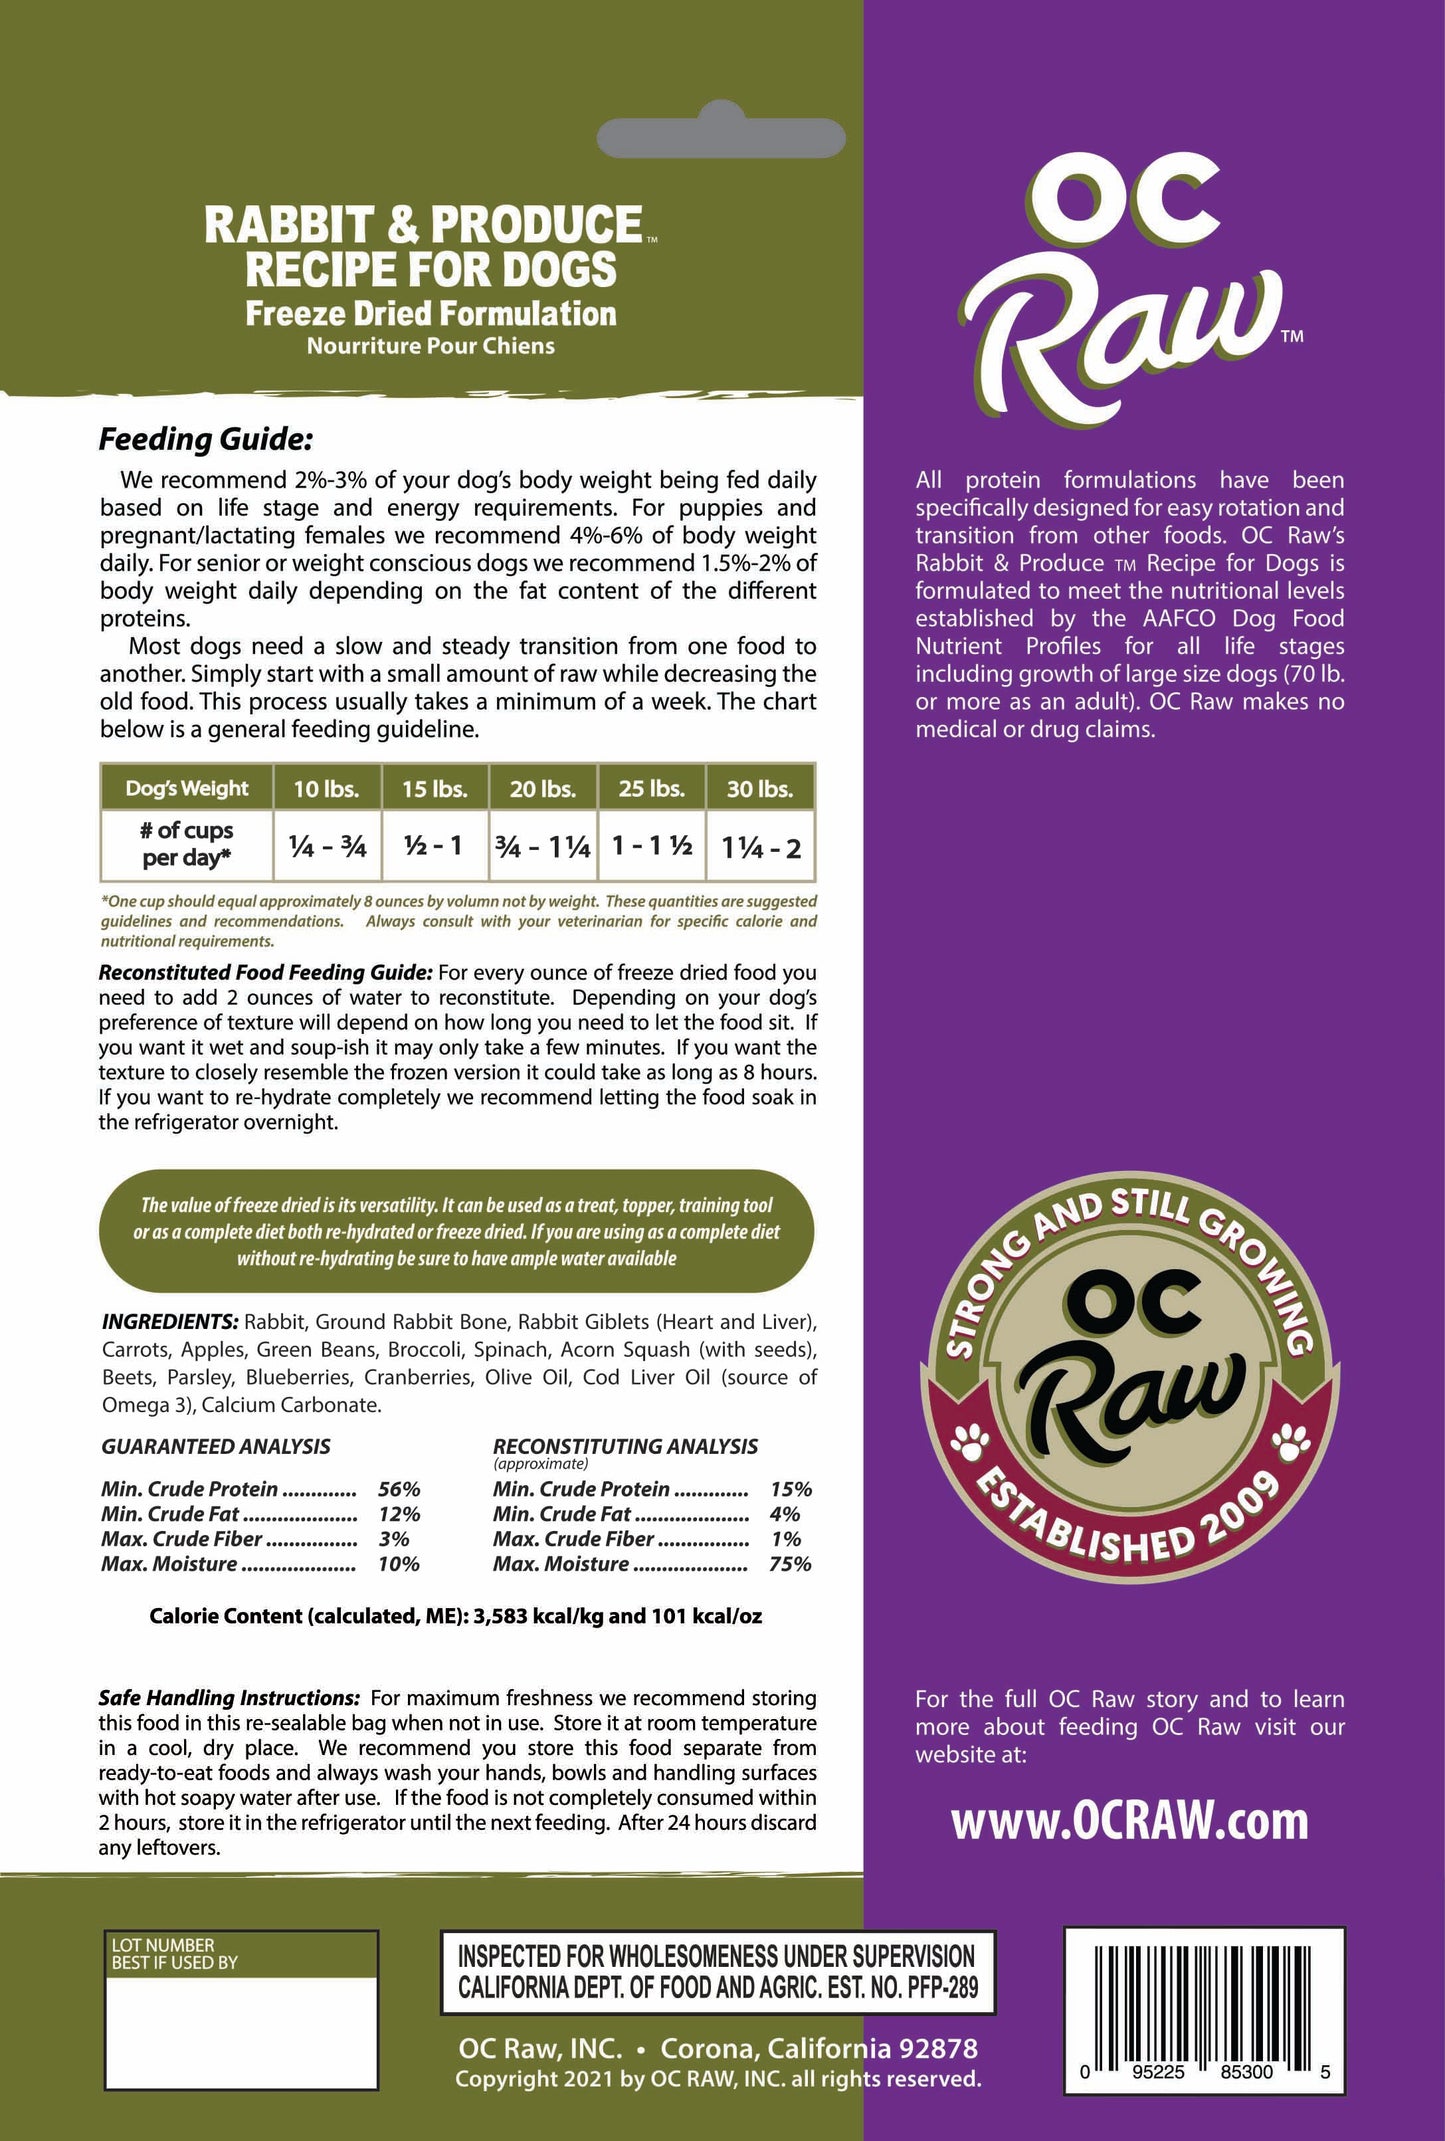 OC Raw Freeze Dried Raw For Dogs - Rabbit & Produce Meaty Rox 5.5oz